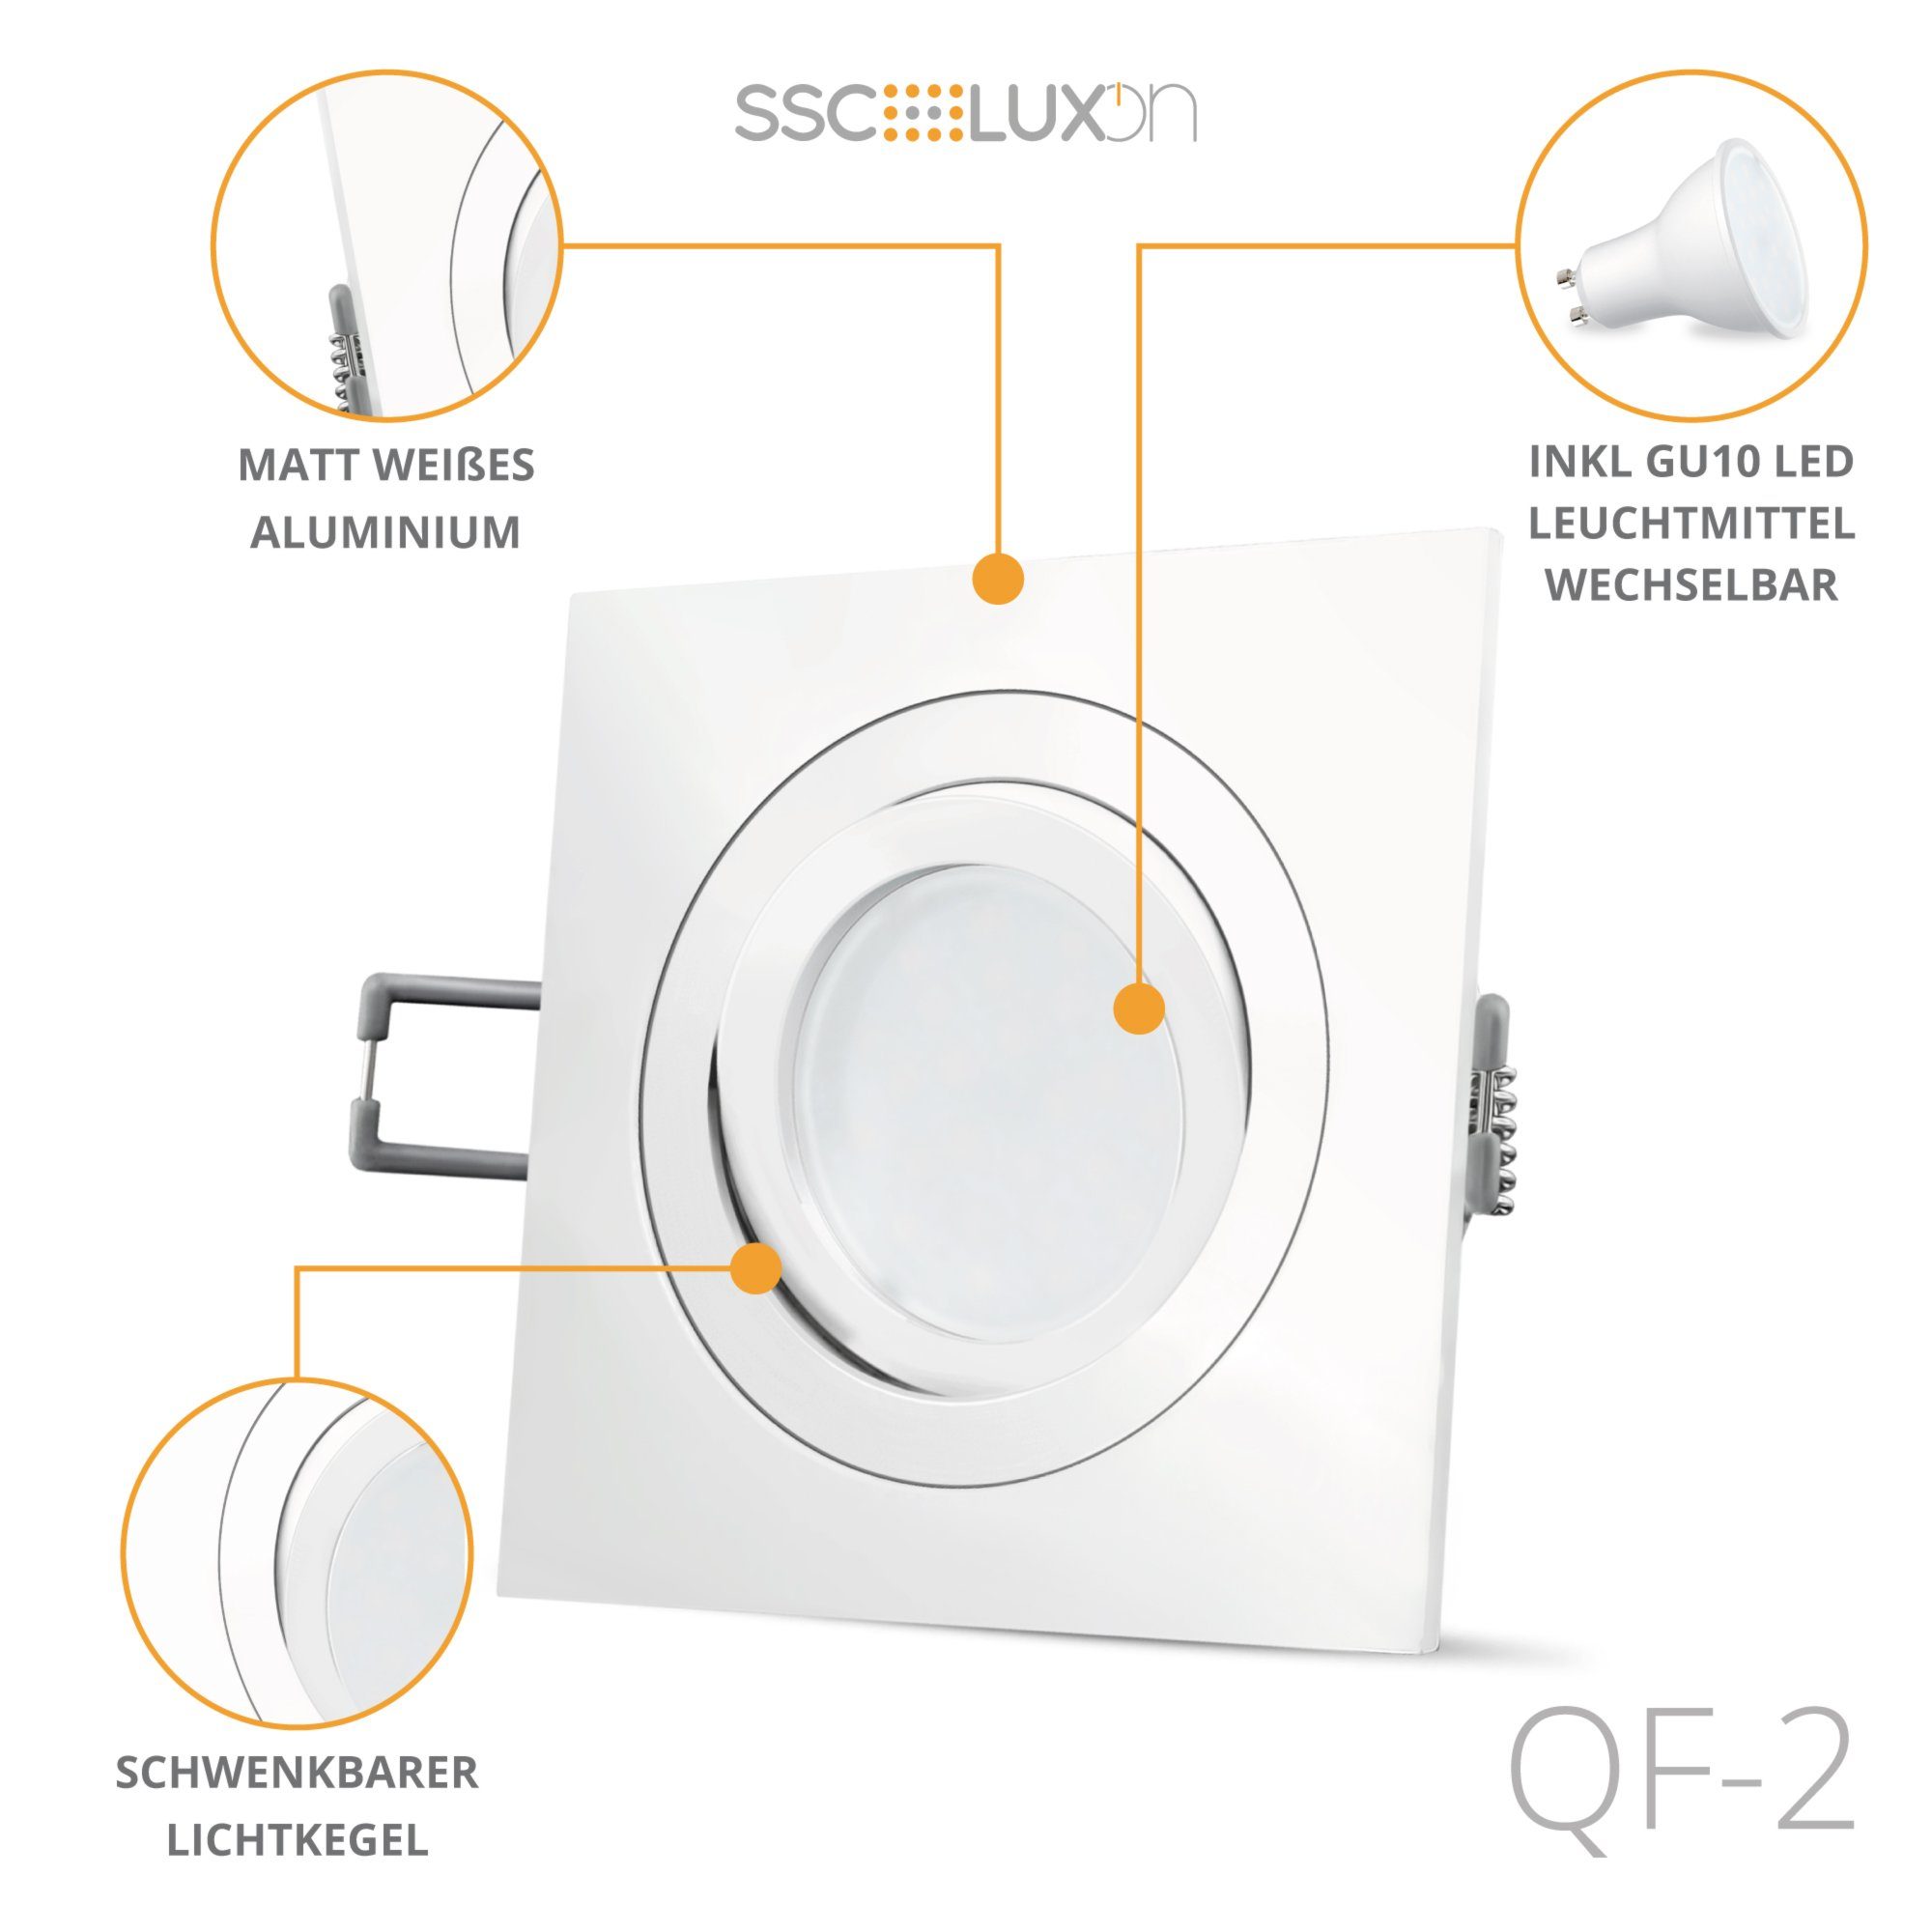 SSC-LUXon LED Einbaustrahler weiss LED Einbauleuchte Einbaustrahler LED QF-2 schwenkbar GU10, mit Neutralweiß